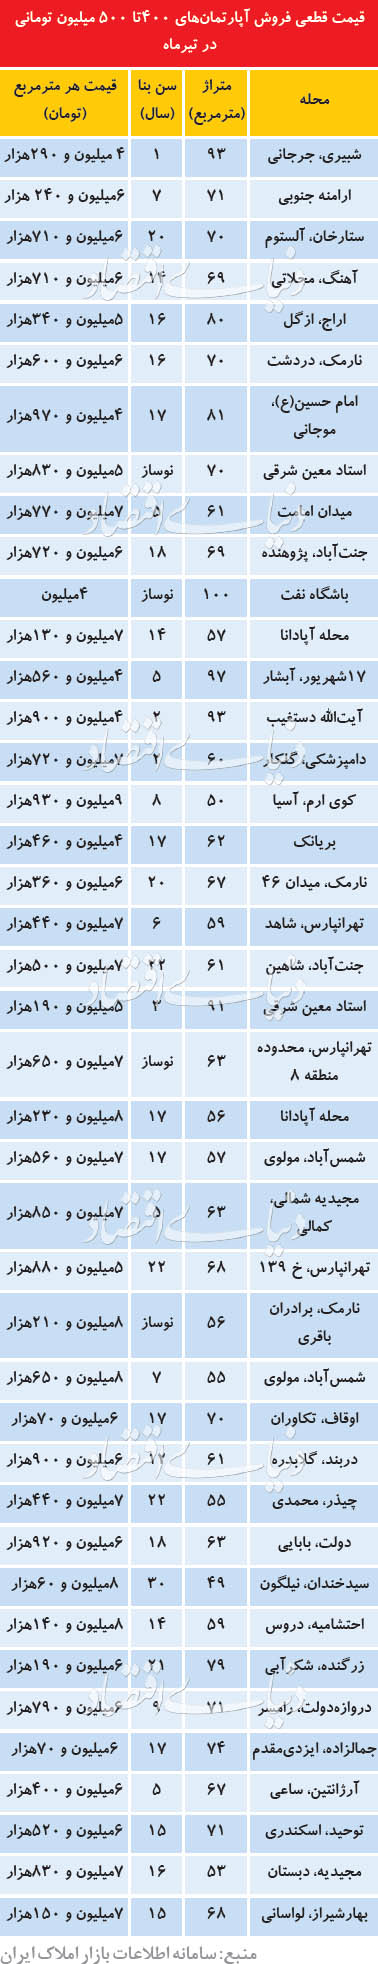 قیمت روز آپراتمان در تهران